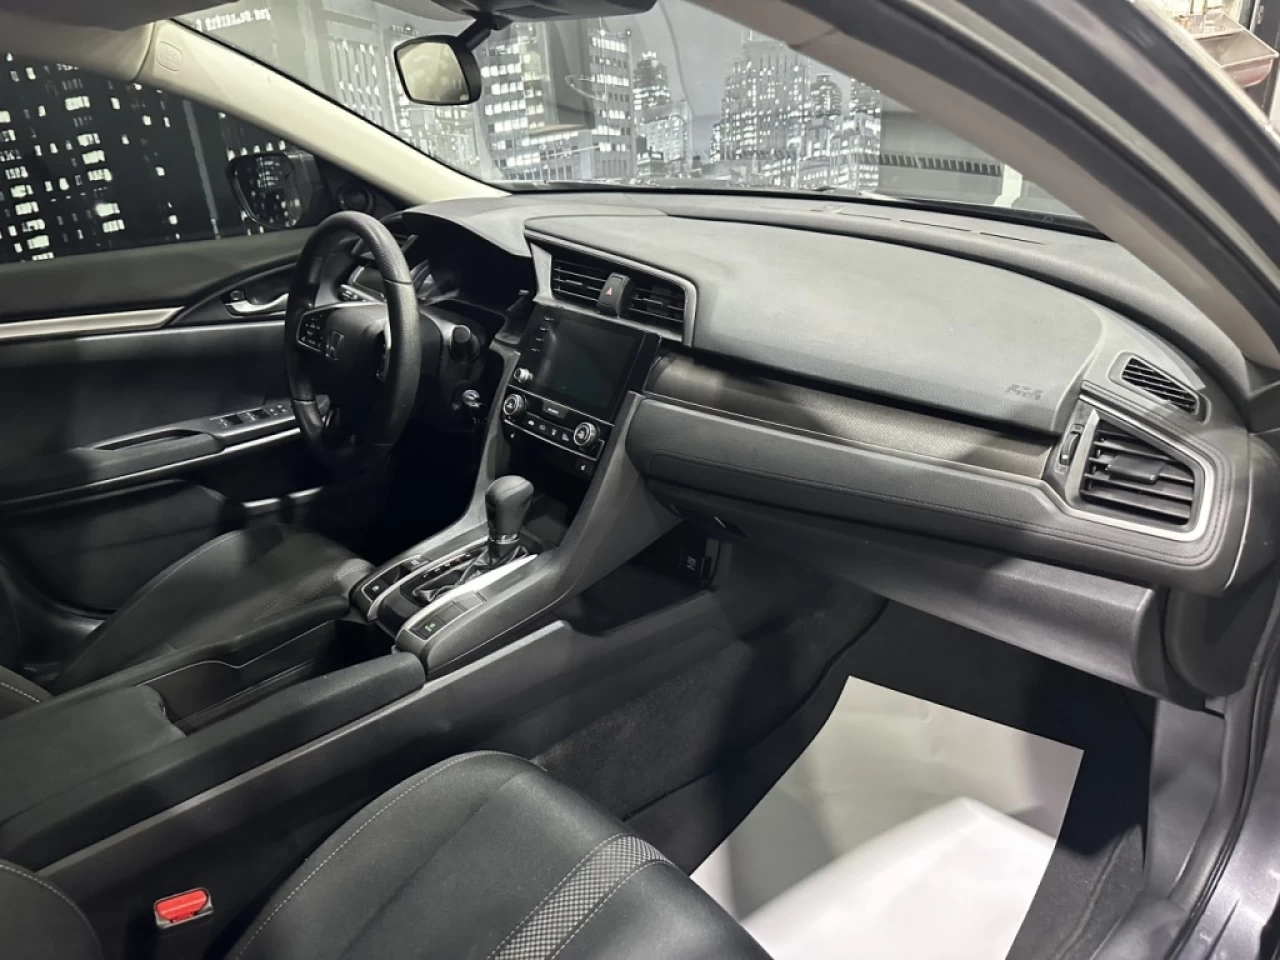 2019 Honda Civic Sedan LX AUTOMATIQUE JAMAIS ACCIDENTÉ AVEC 116 400KM Main Image